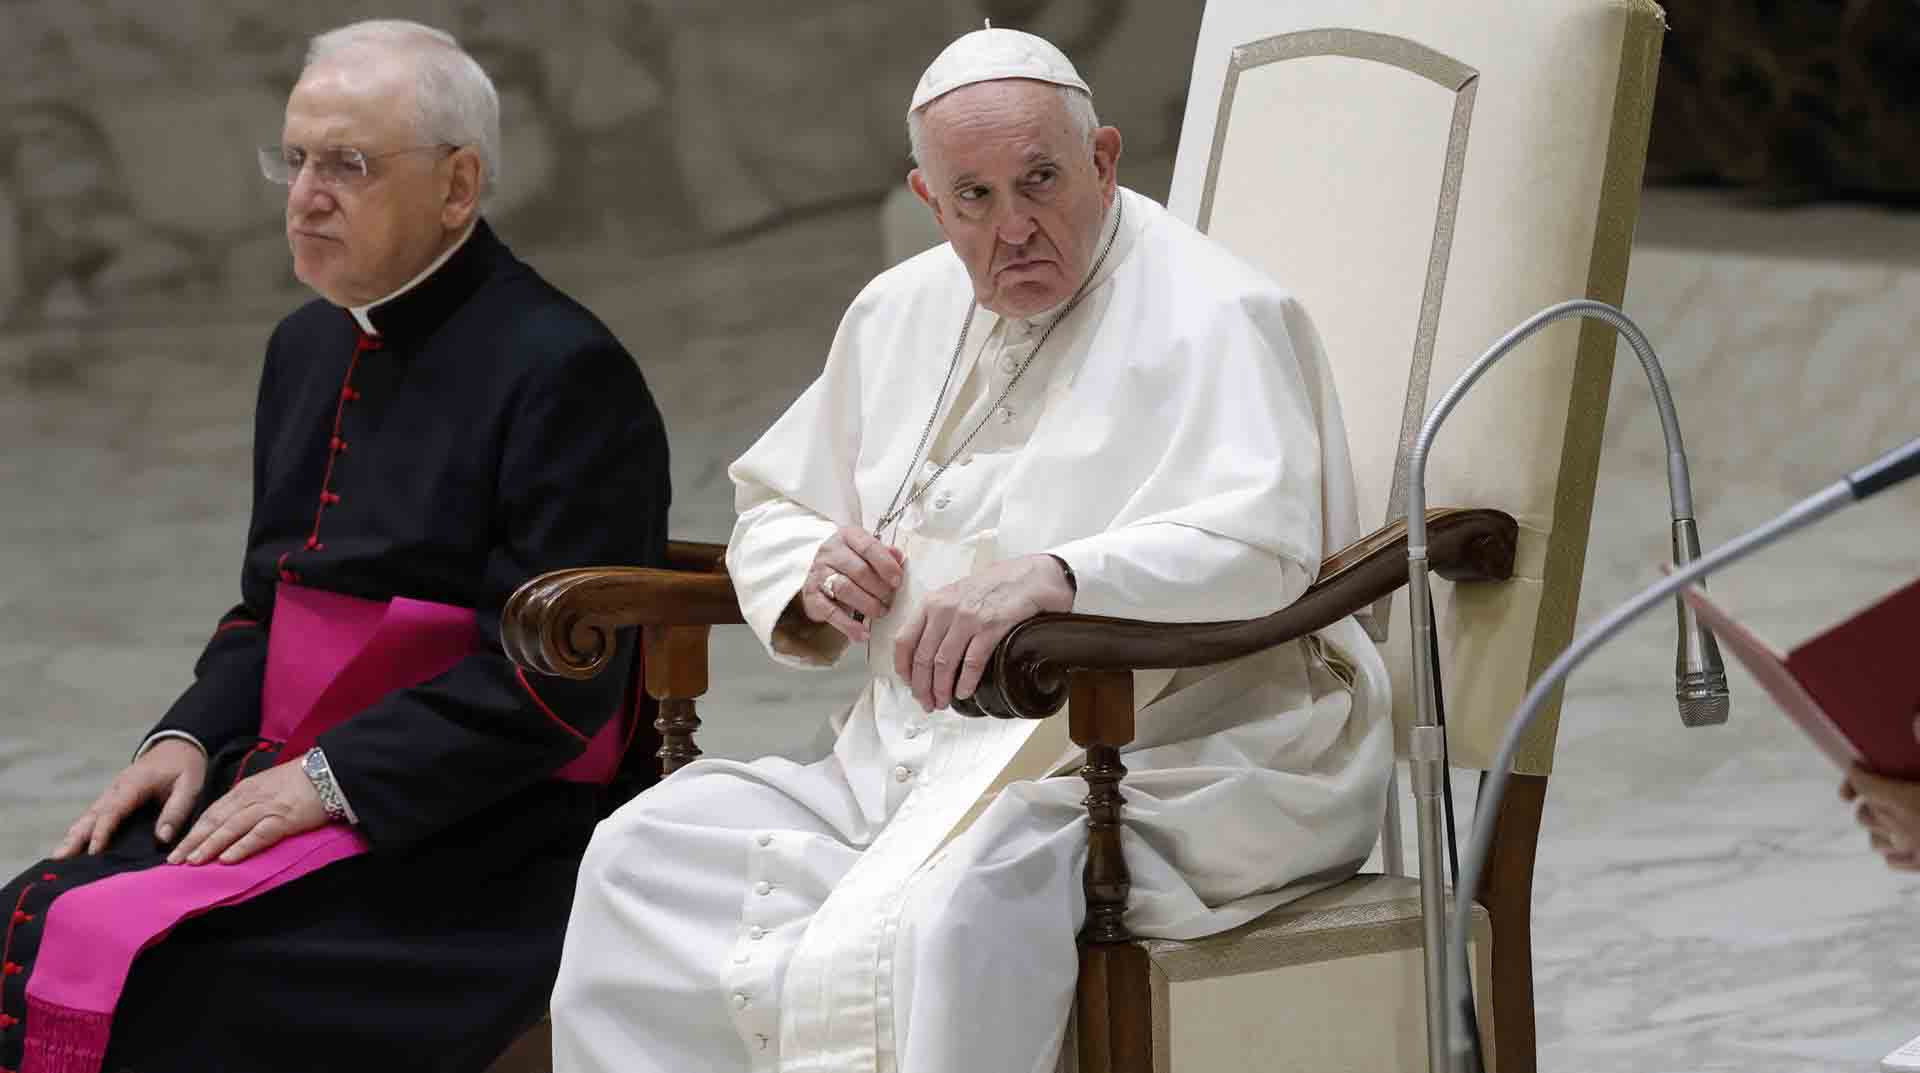 El papa en la audiencia semanal en el Vaticano se refirió al hecho de pretender la eterna juventud. Foto: EFE.